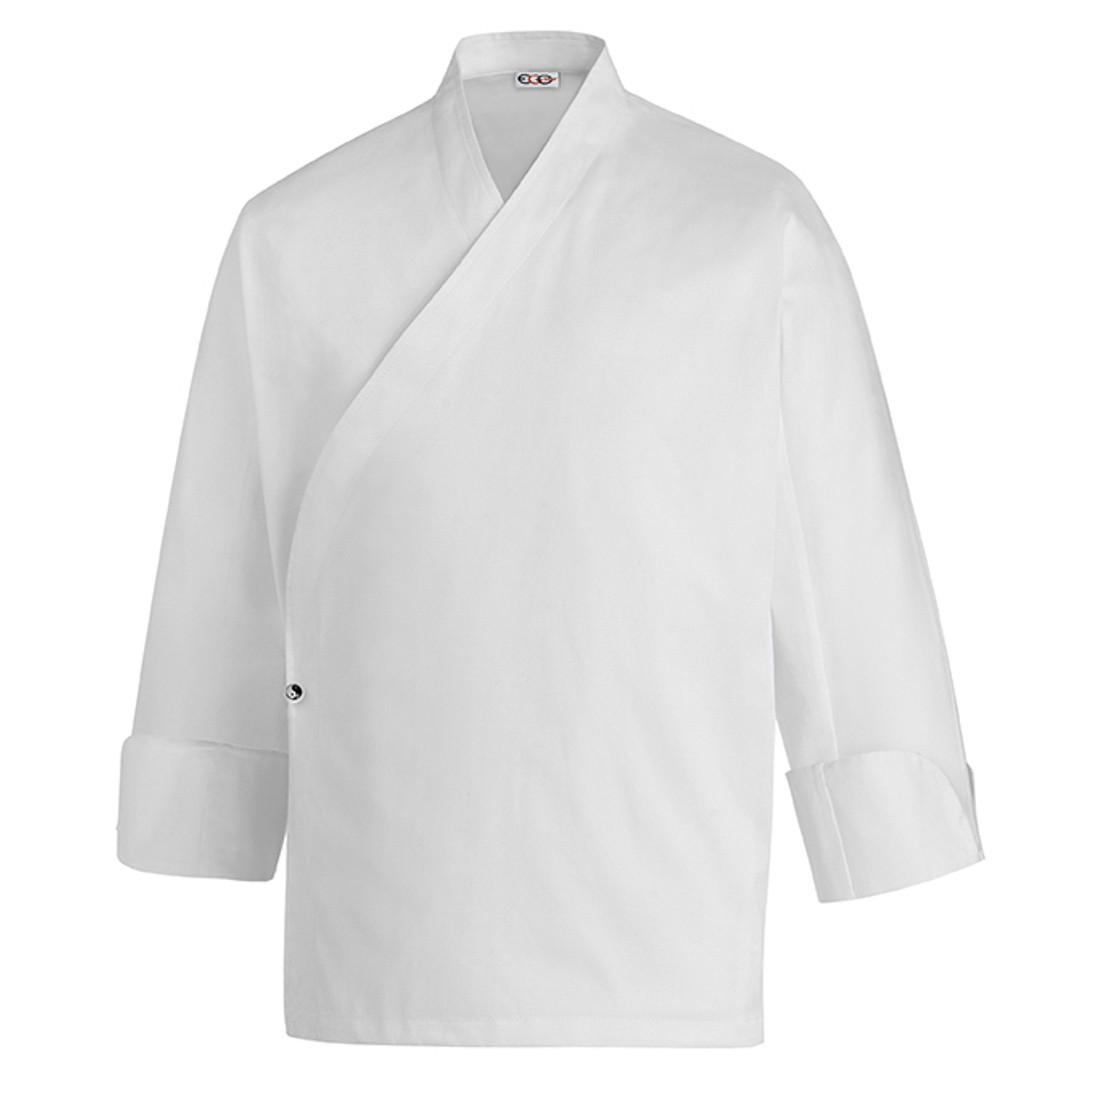 Veste chef Sushi, 100% coton - Les vêtements de protection